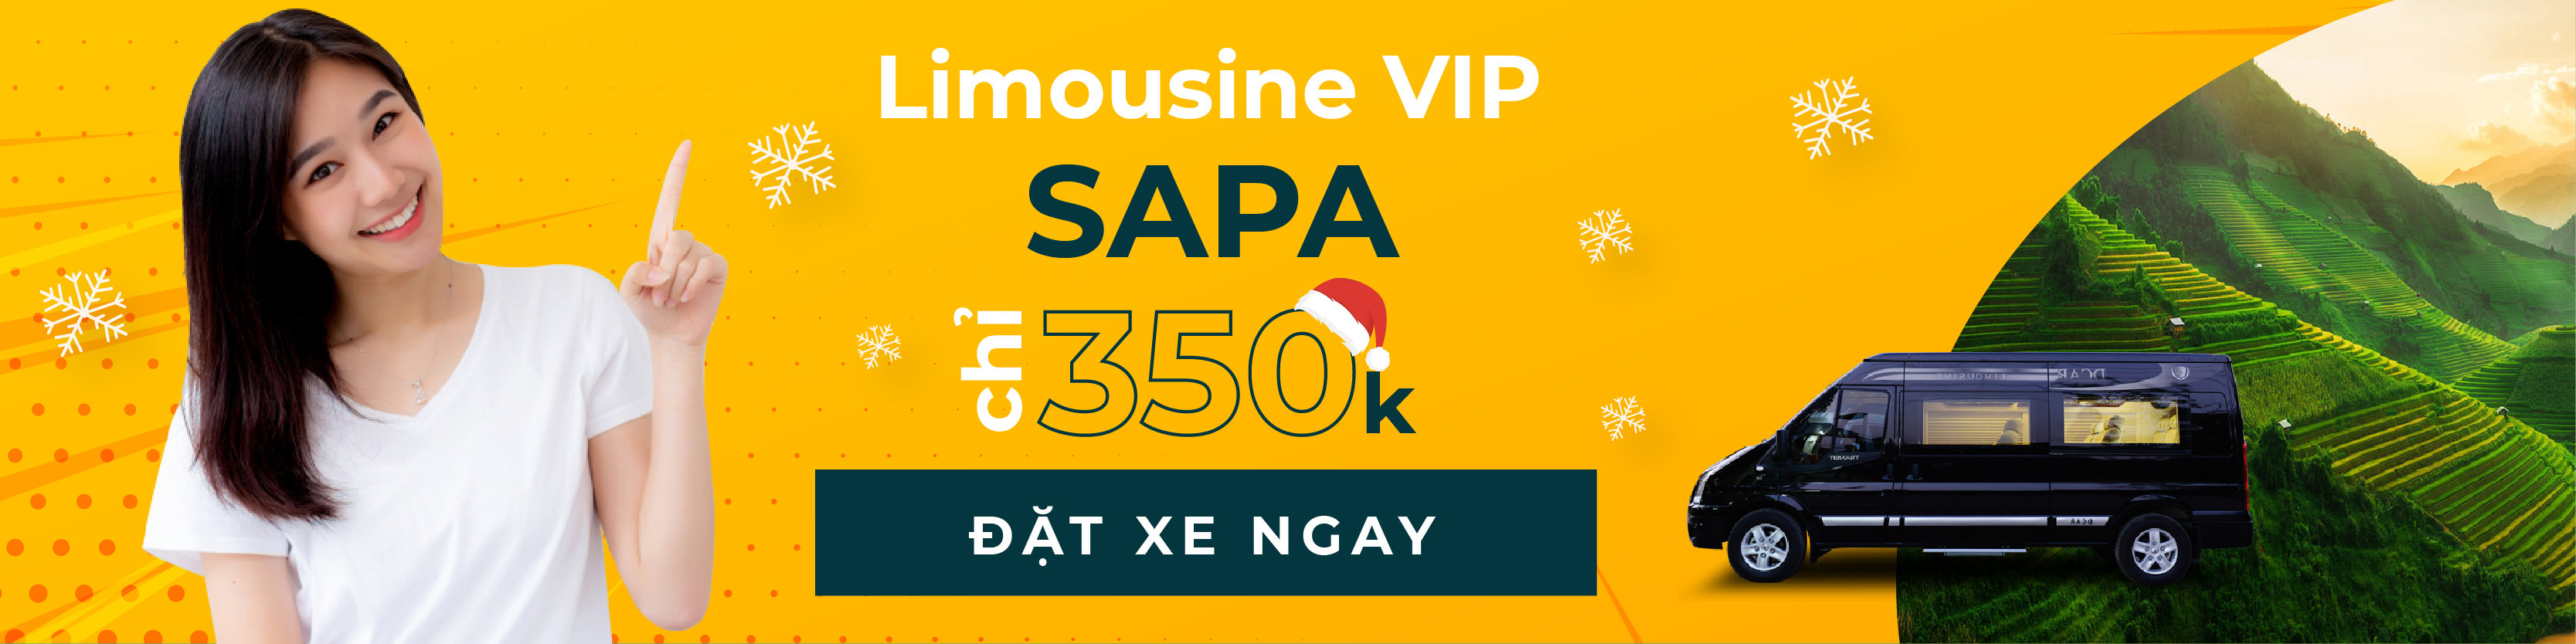 Limousine Hà Nội Sapa chỉ 350K